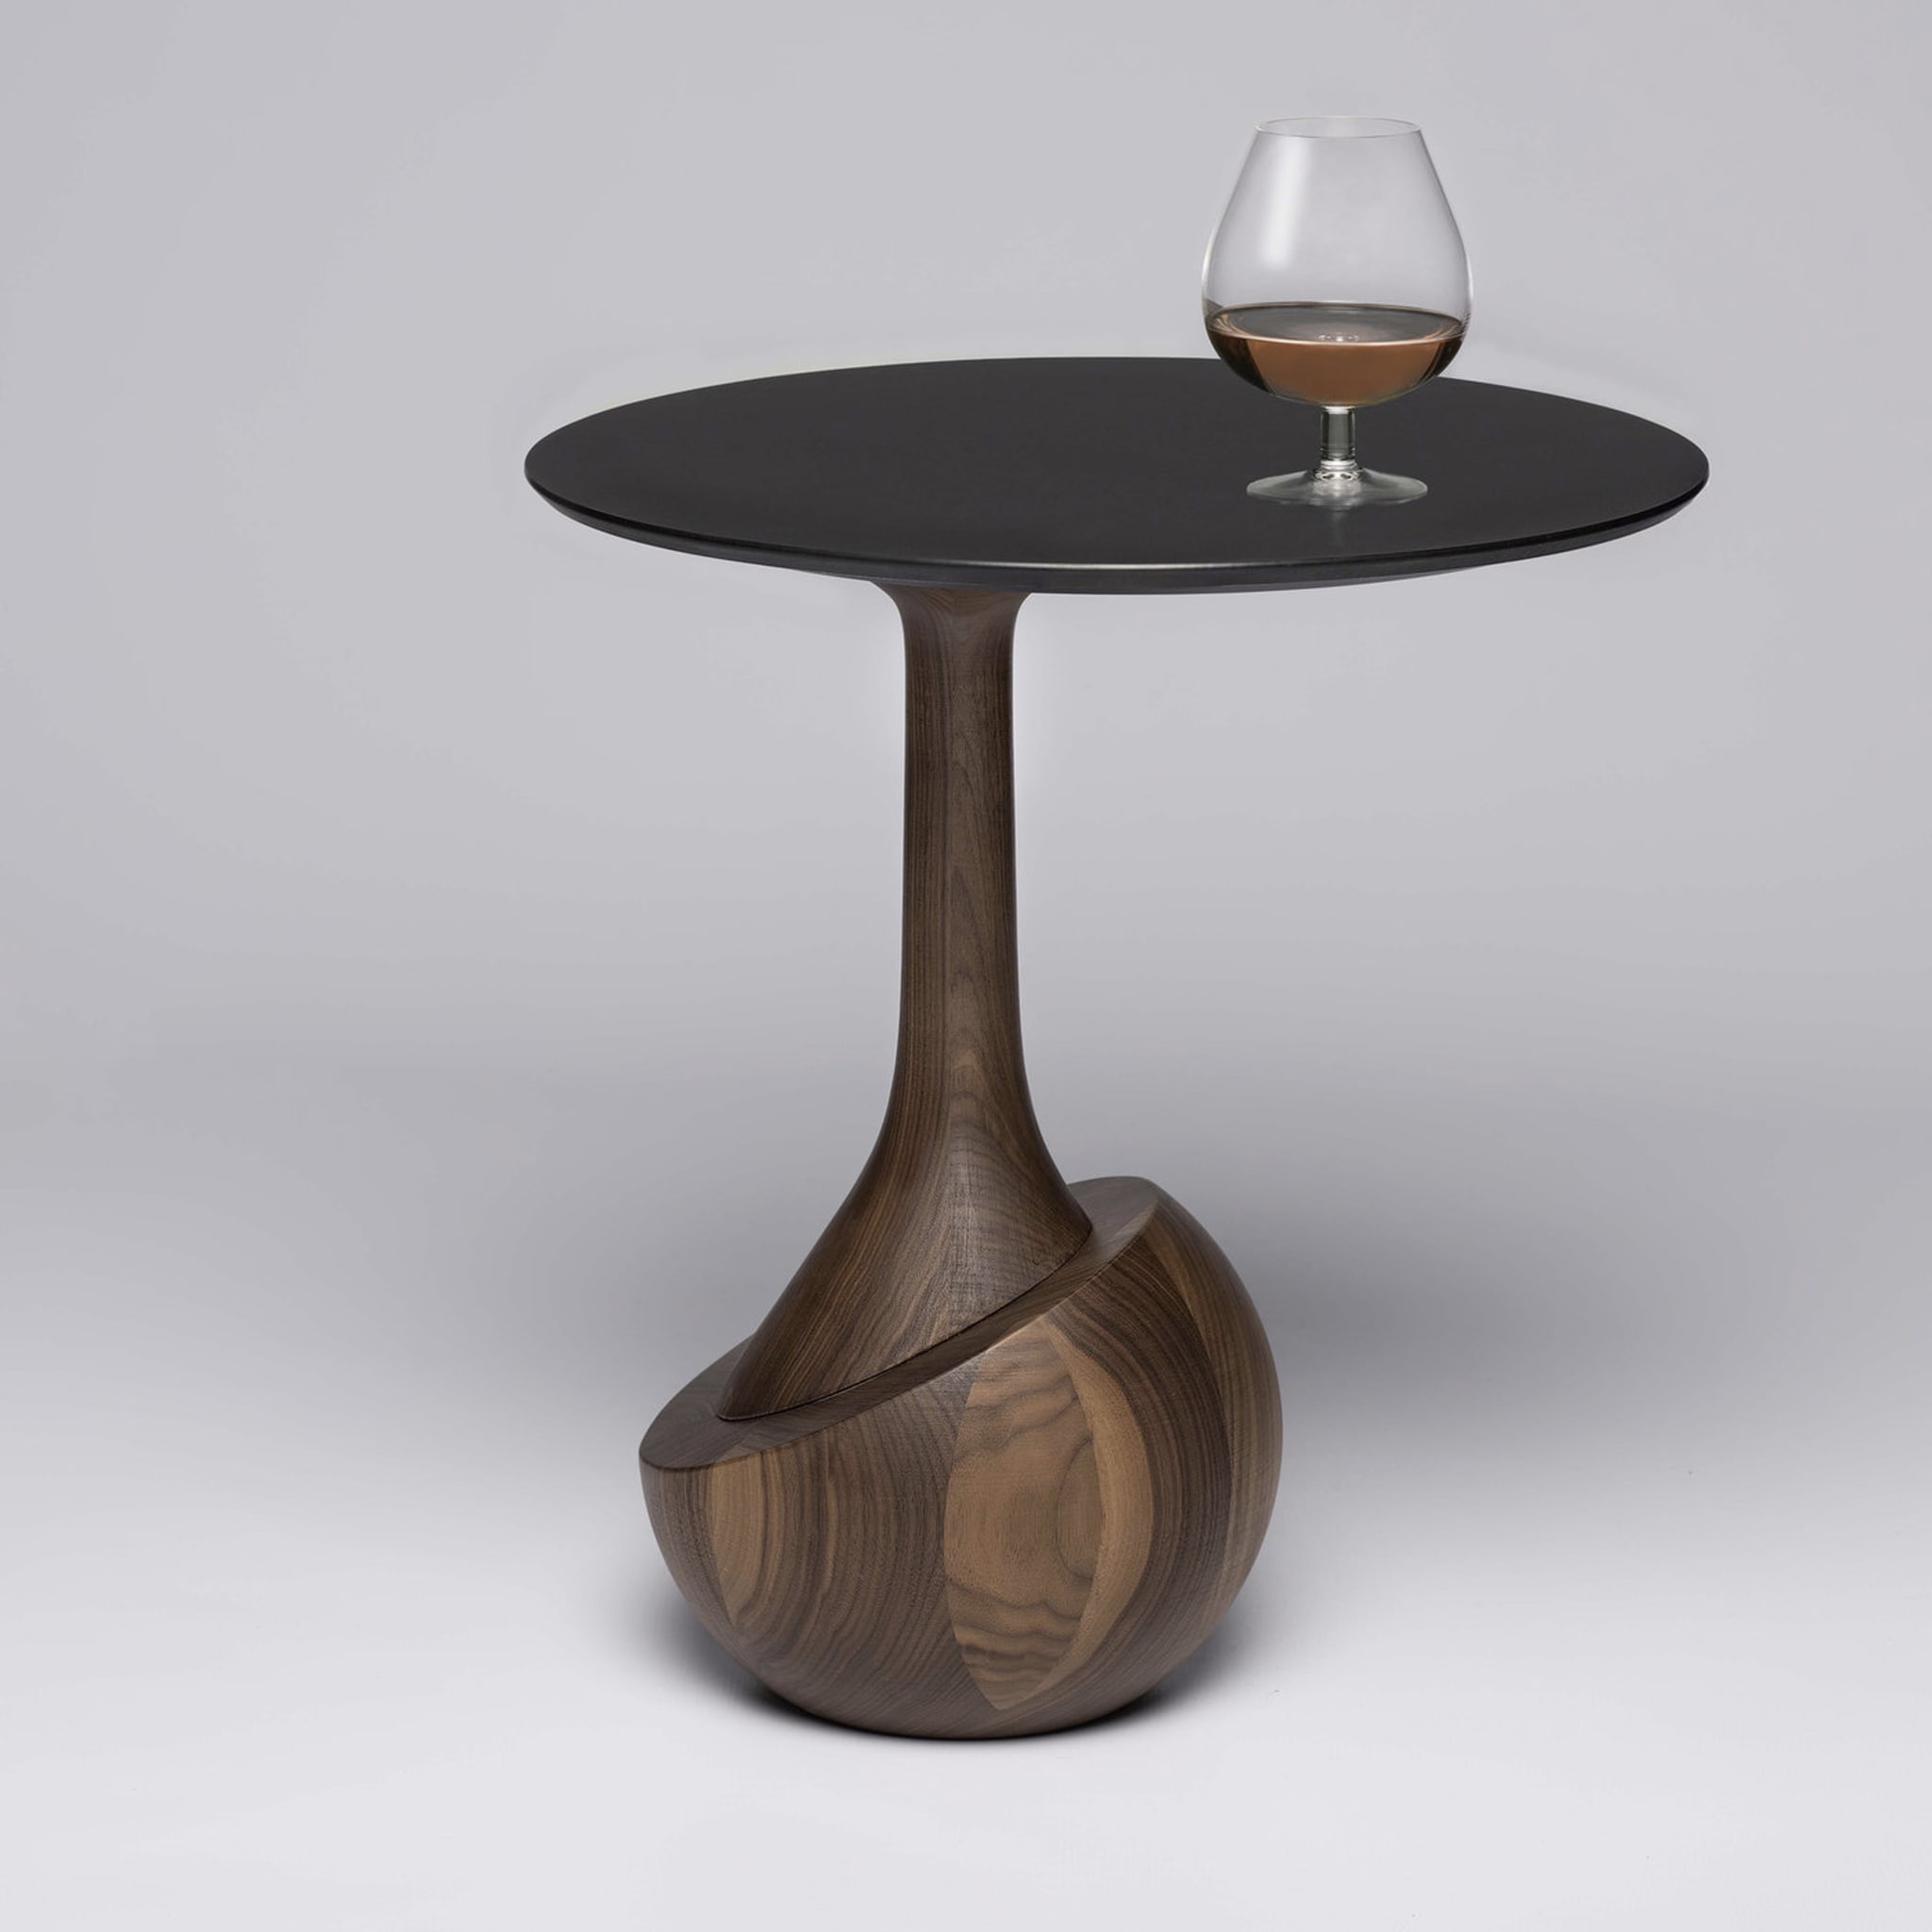 Achille Round Dark Walnut Wood Contemporary Side Table - Alternative view 1